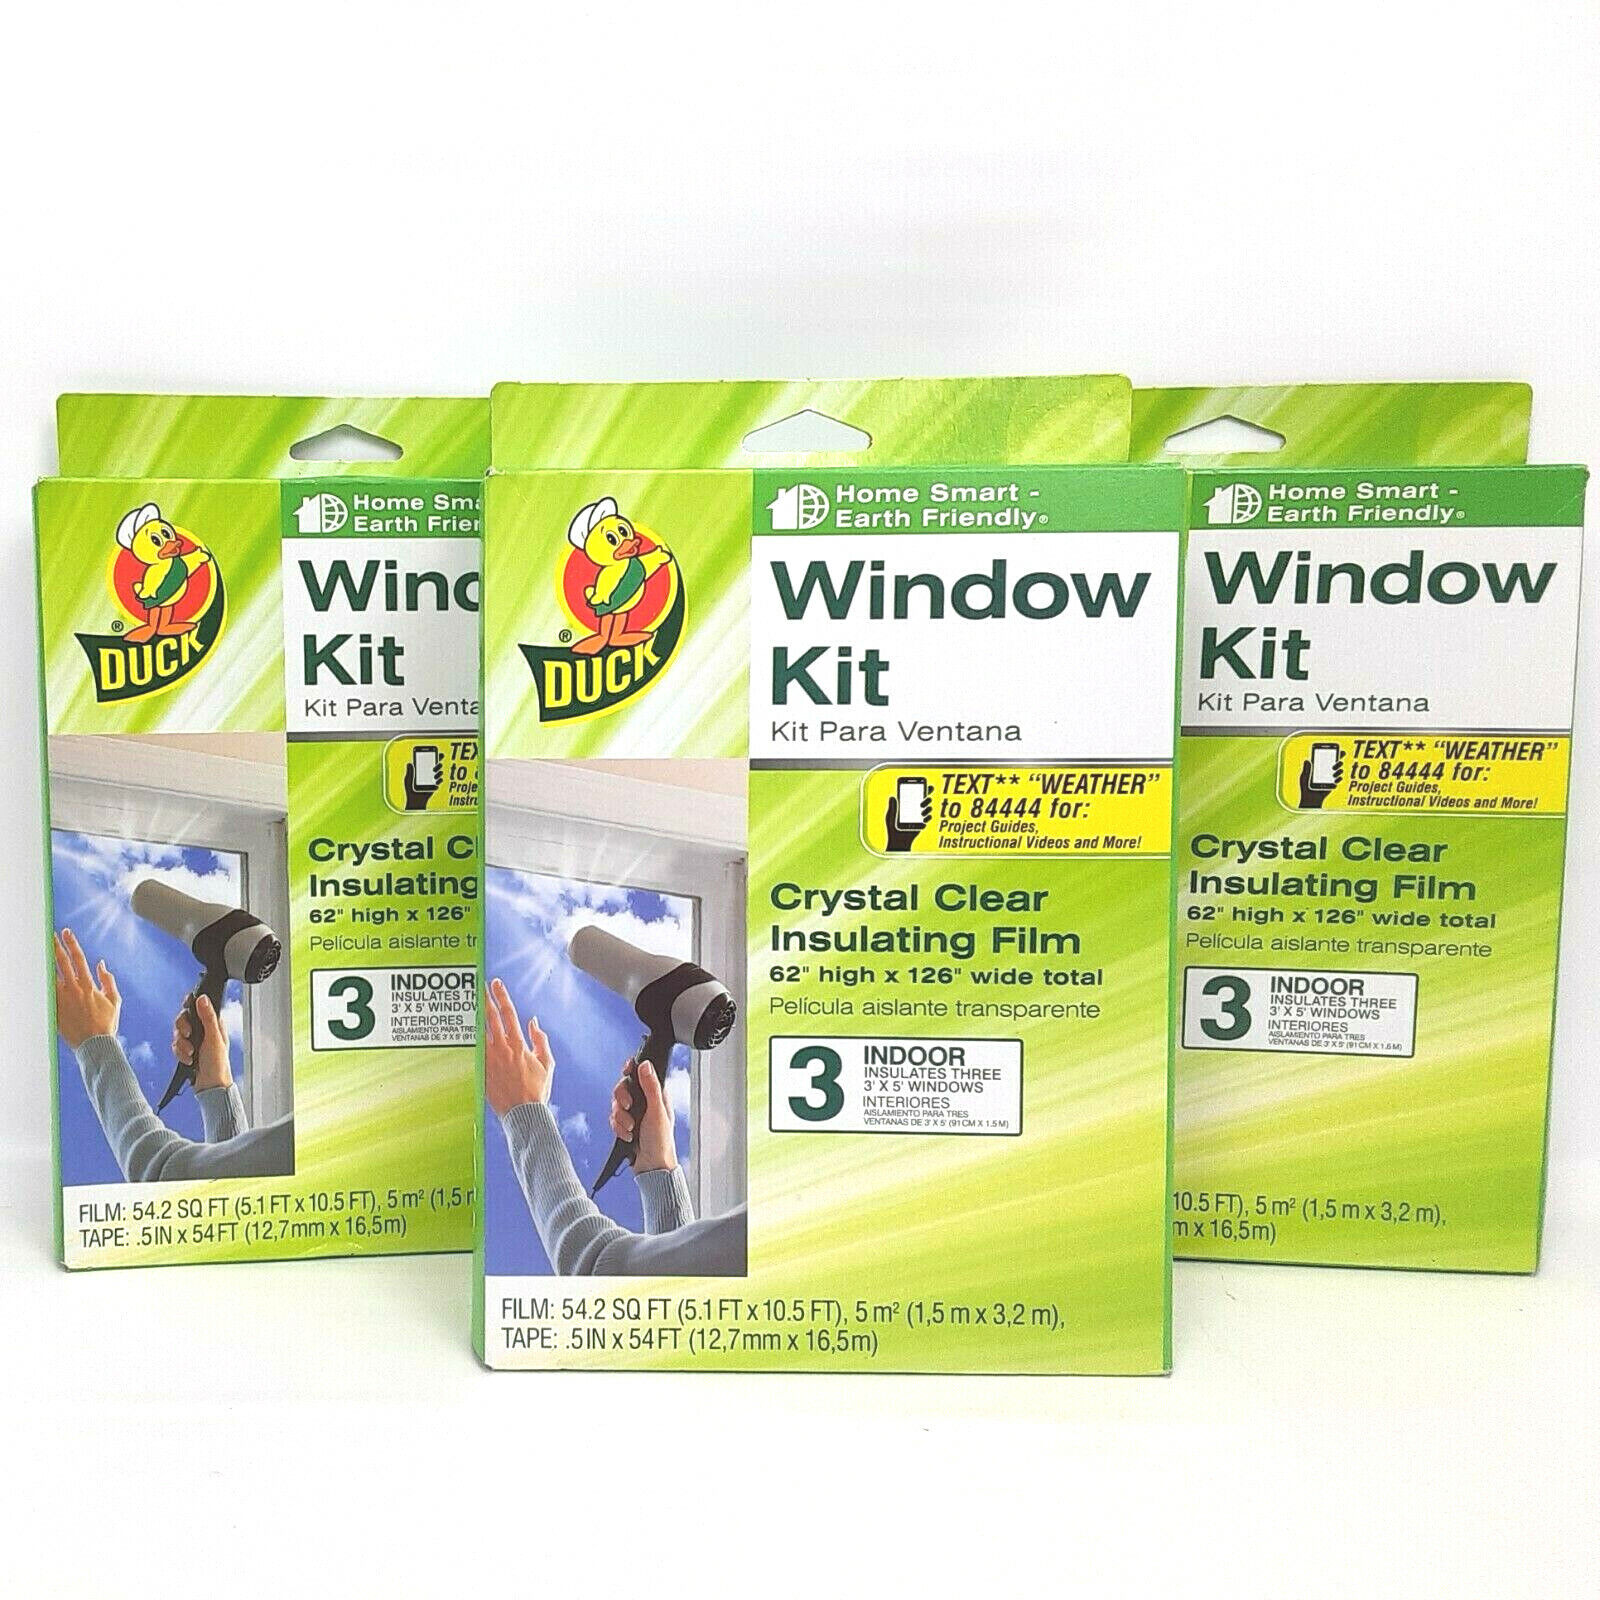 (3) Duck Brand Indoor 3 pk Window Shrink Film Insulator Kit, 62" x 126" #286557  Duck 285233